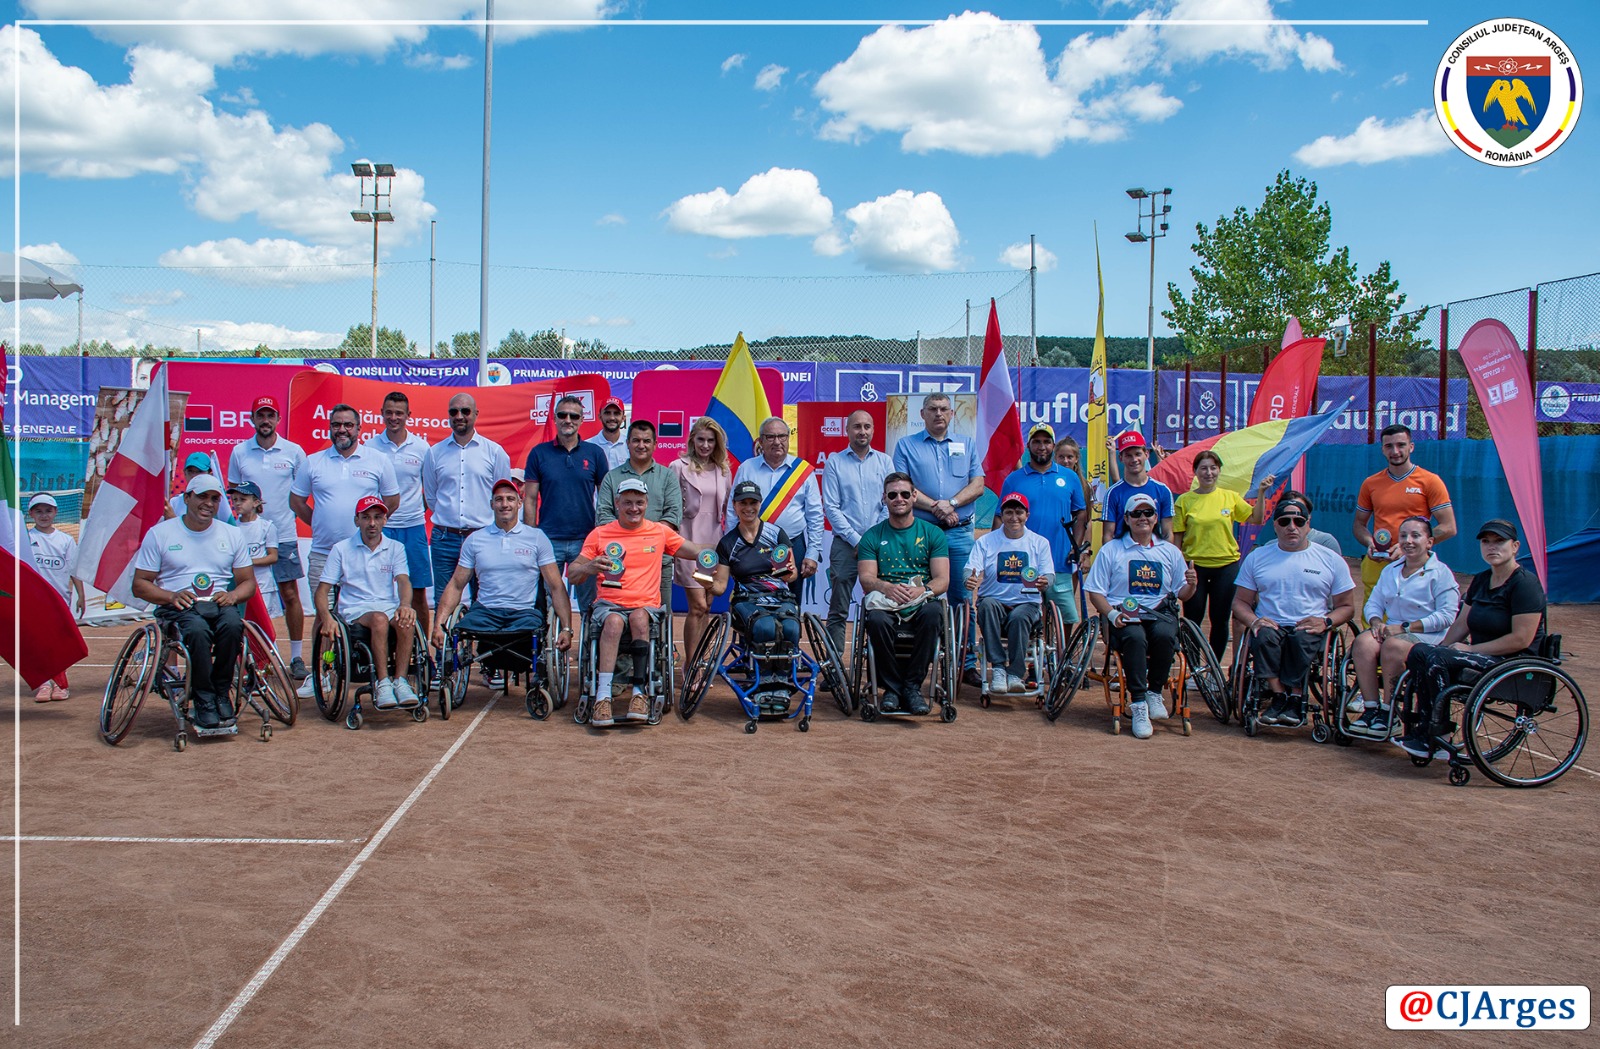 CJ ARGES - Turneul international de tenis destinat persoanelor cu dizabilitati.jpeg